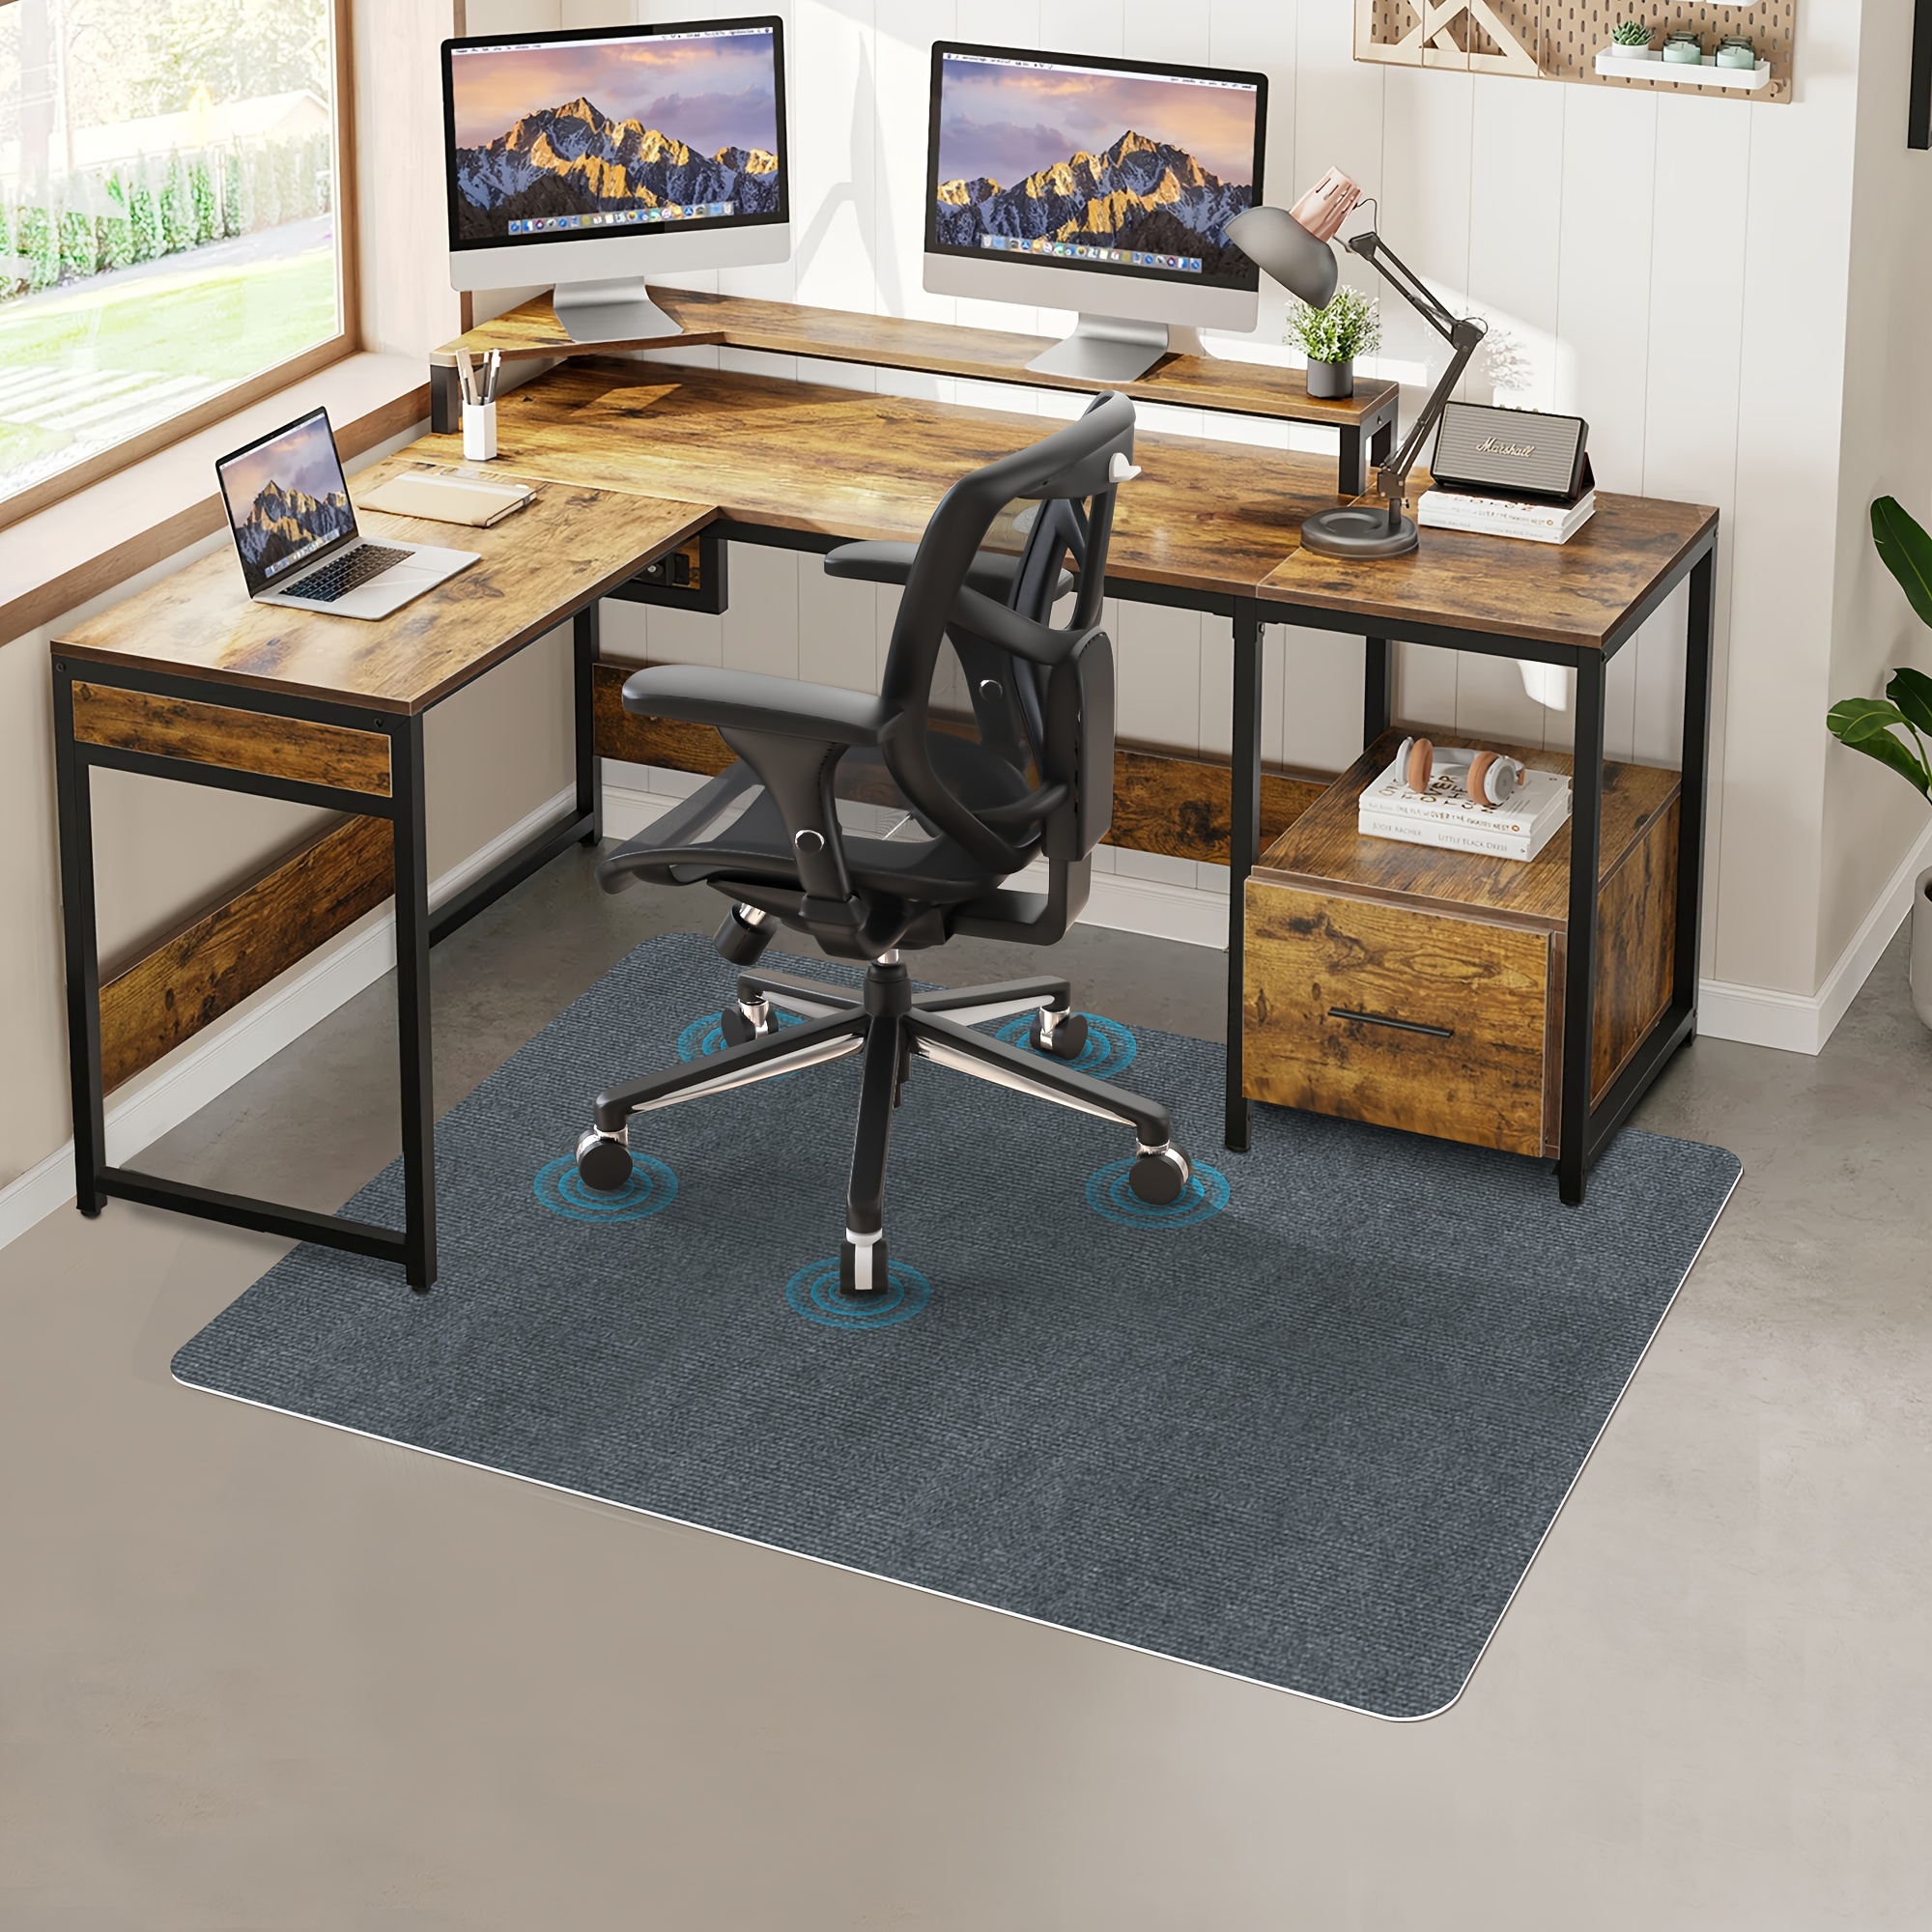 Protector de suelo trabajando con sillas de escritorio, alfombras para  escritorio